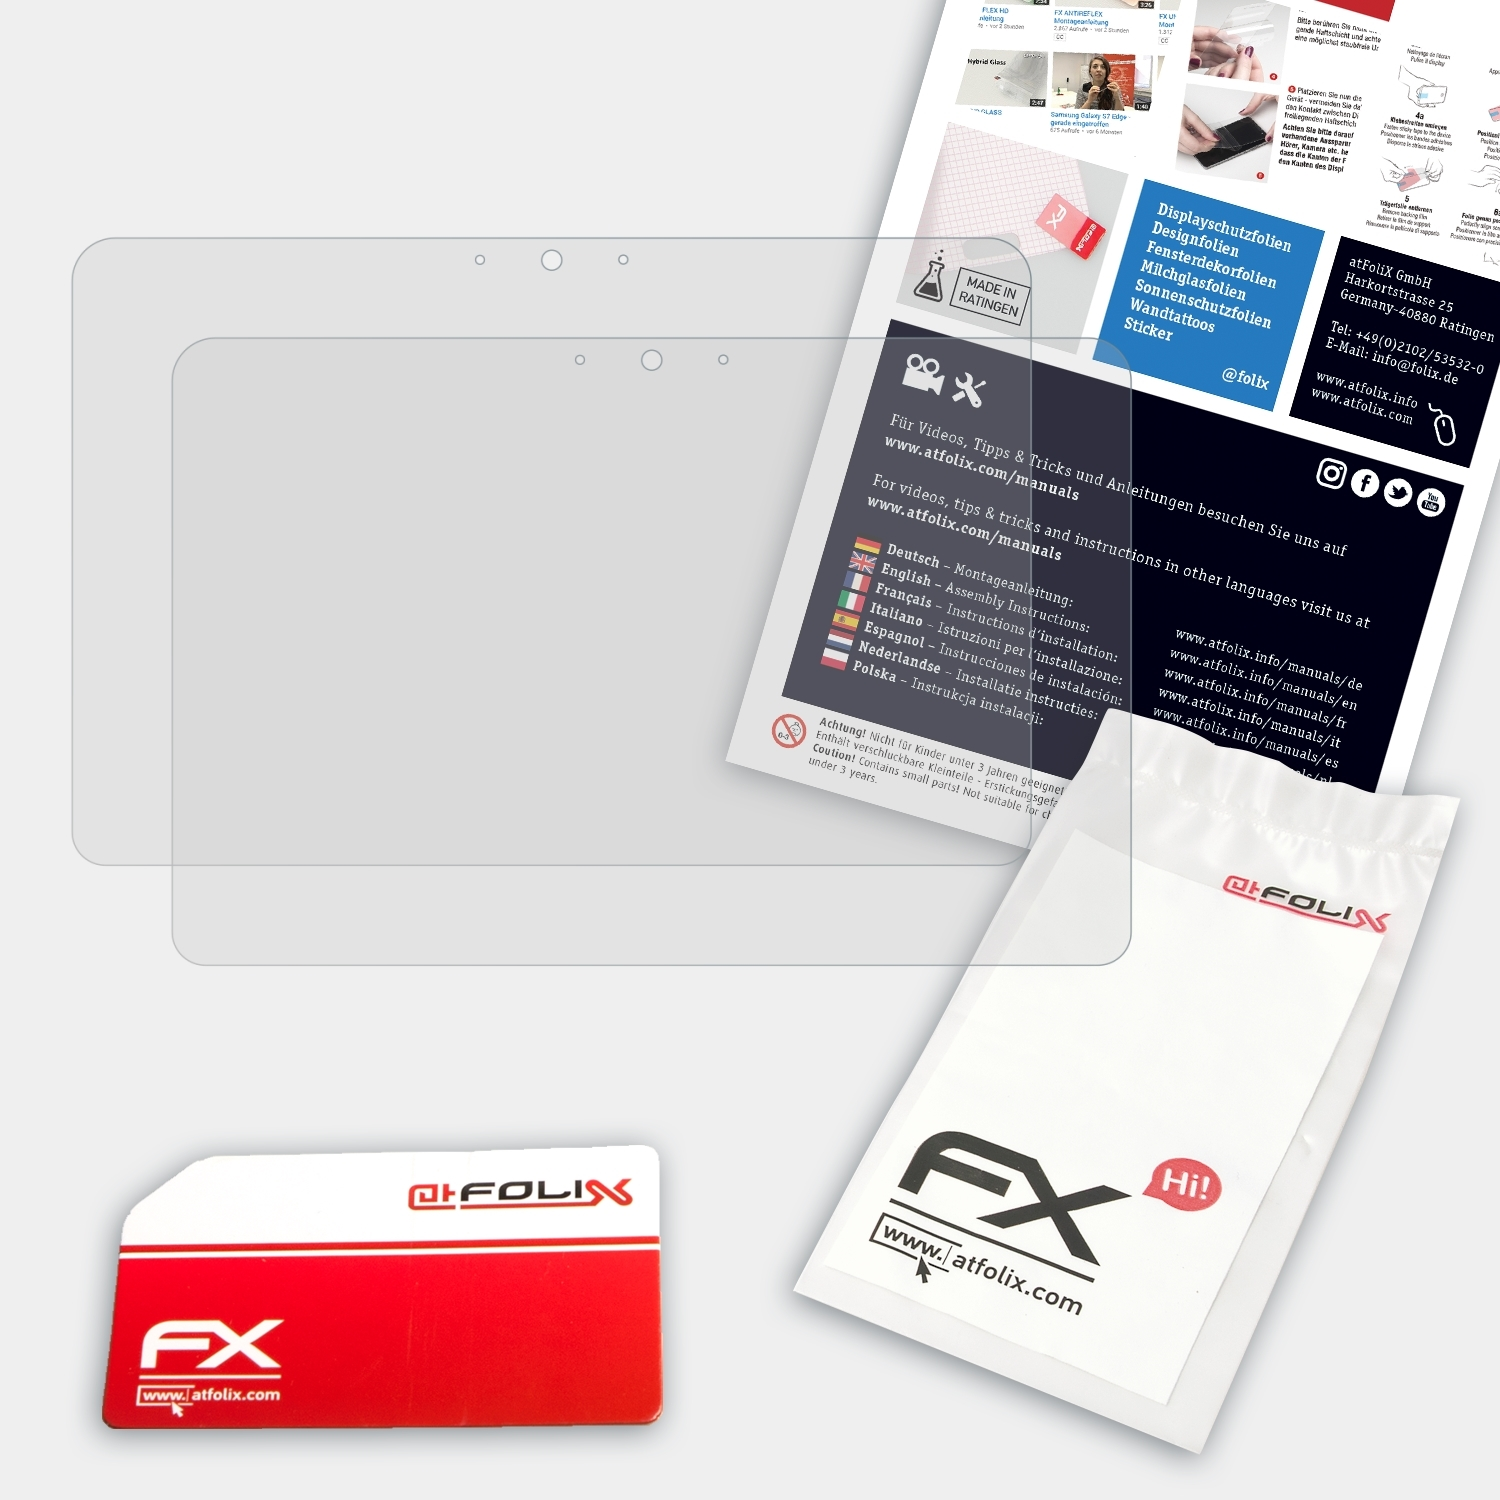 FX-Antireflex Elitebook ATFOLIX 1040 Displayschutz(für G3) HP 2x